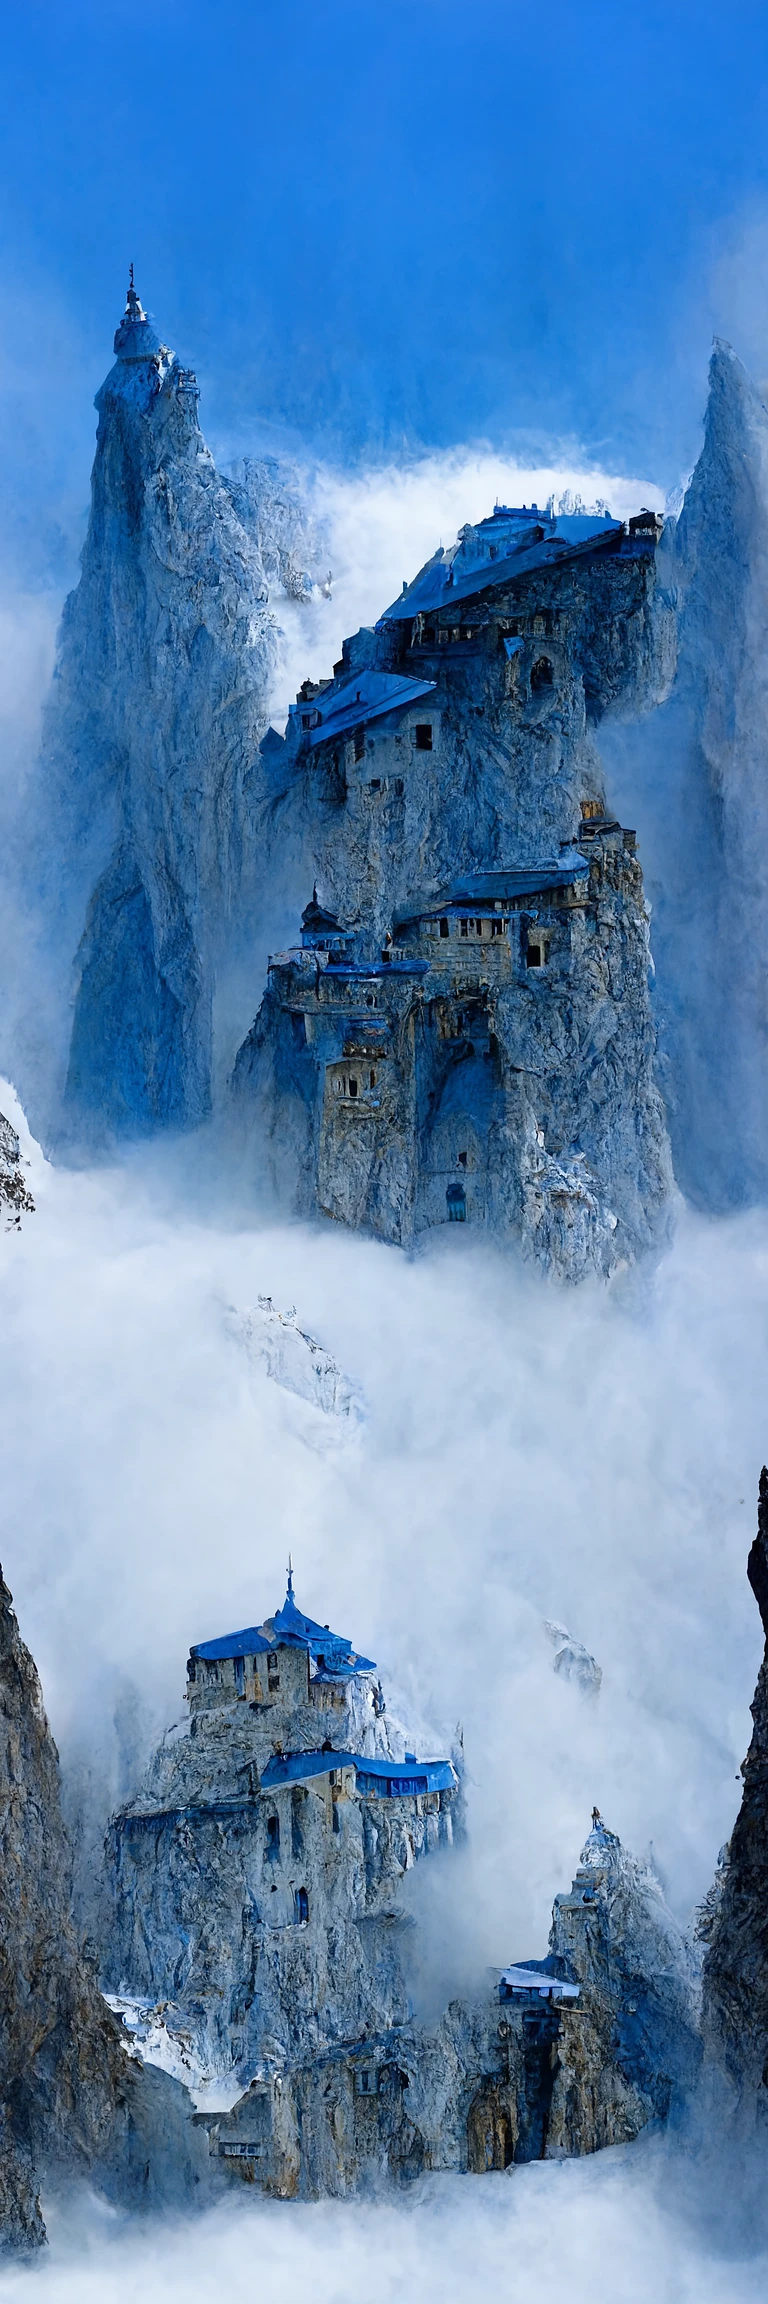 冰川悬崖上的神秘水晶堡